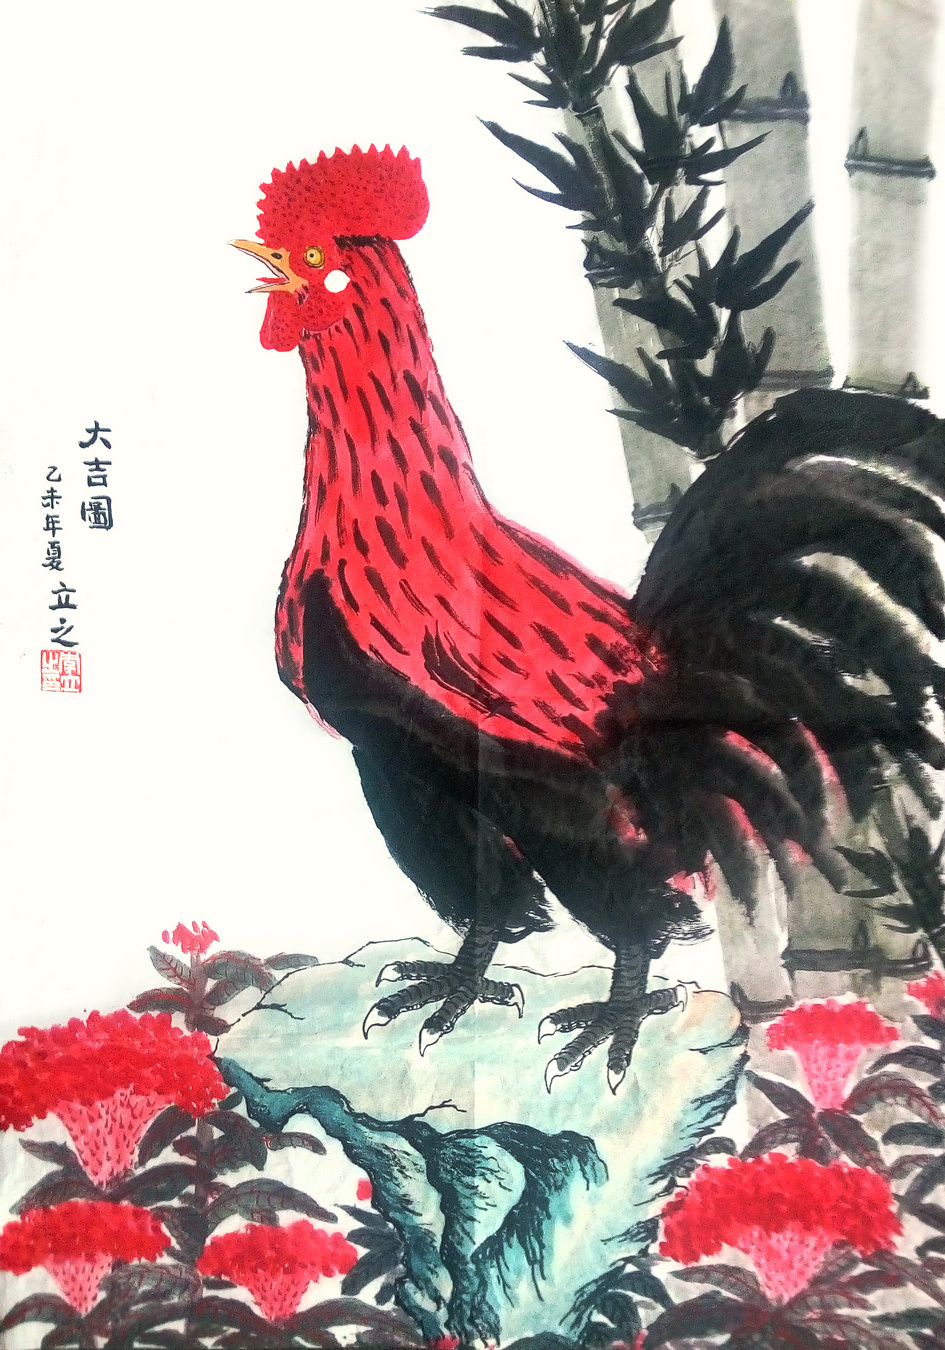 李立之作品《大吉图》写意雄鸡 纸本水墨设色 2015年